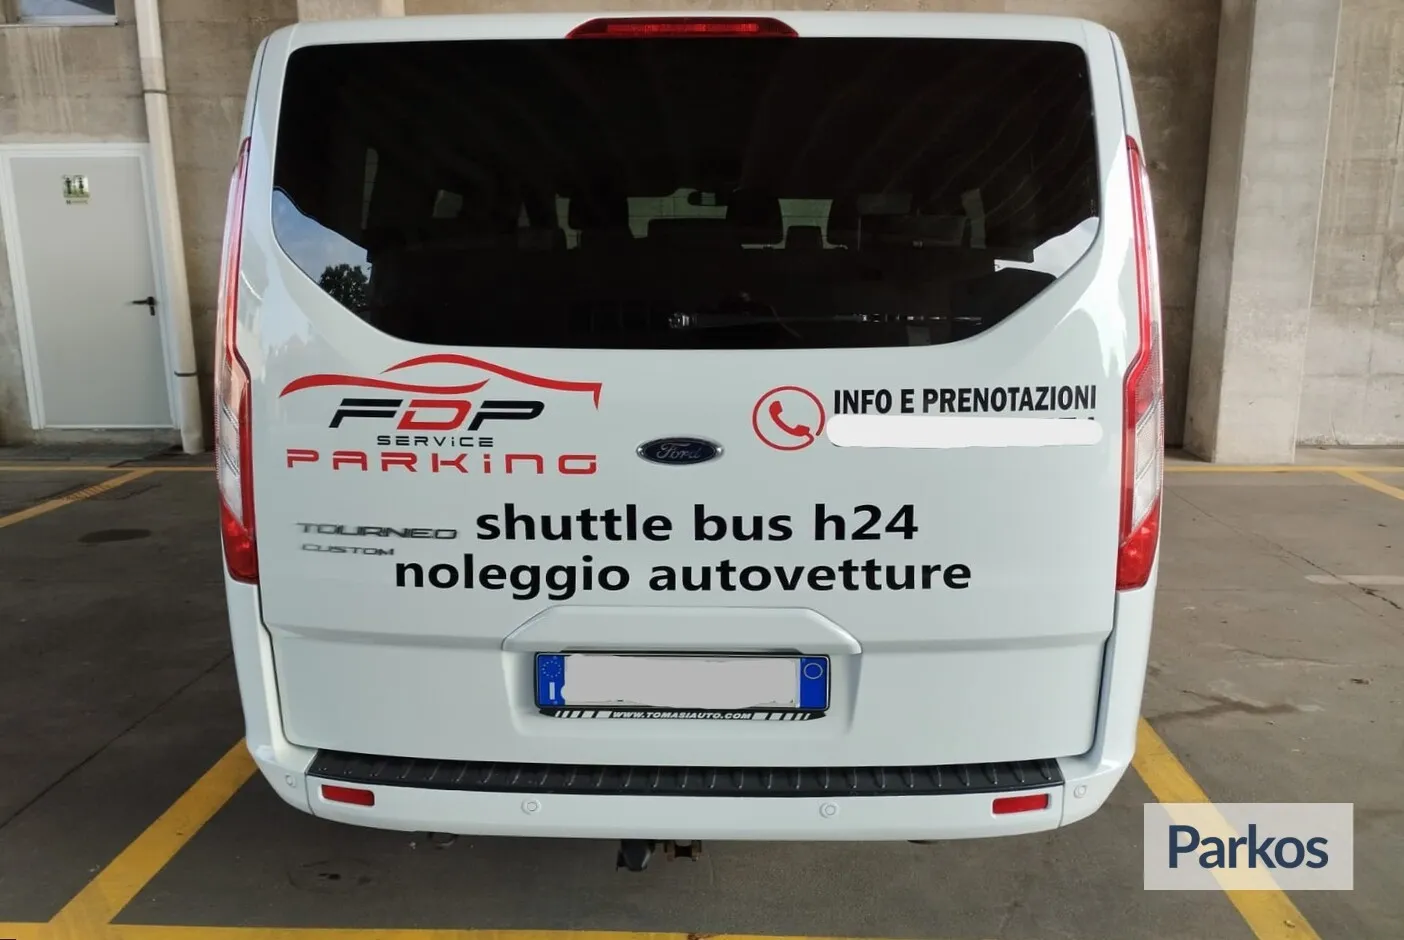 FDP Service Parking (Paga in parcheggio) - Malpensa Airport Parking - picture 1